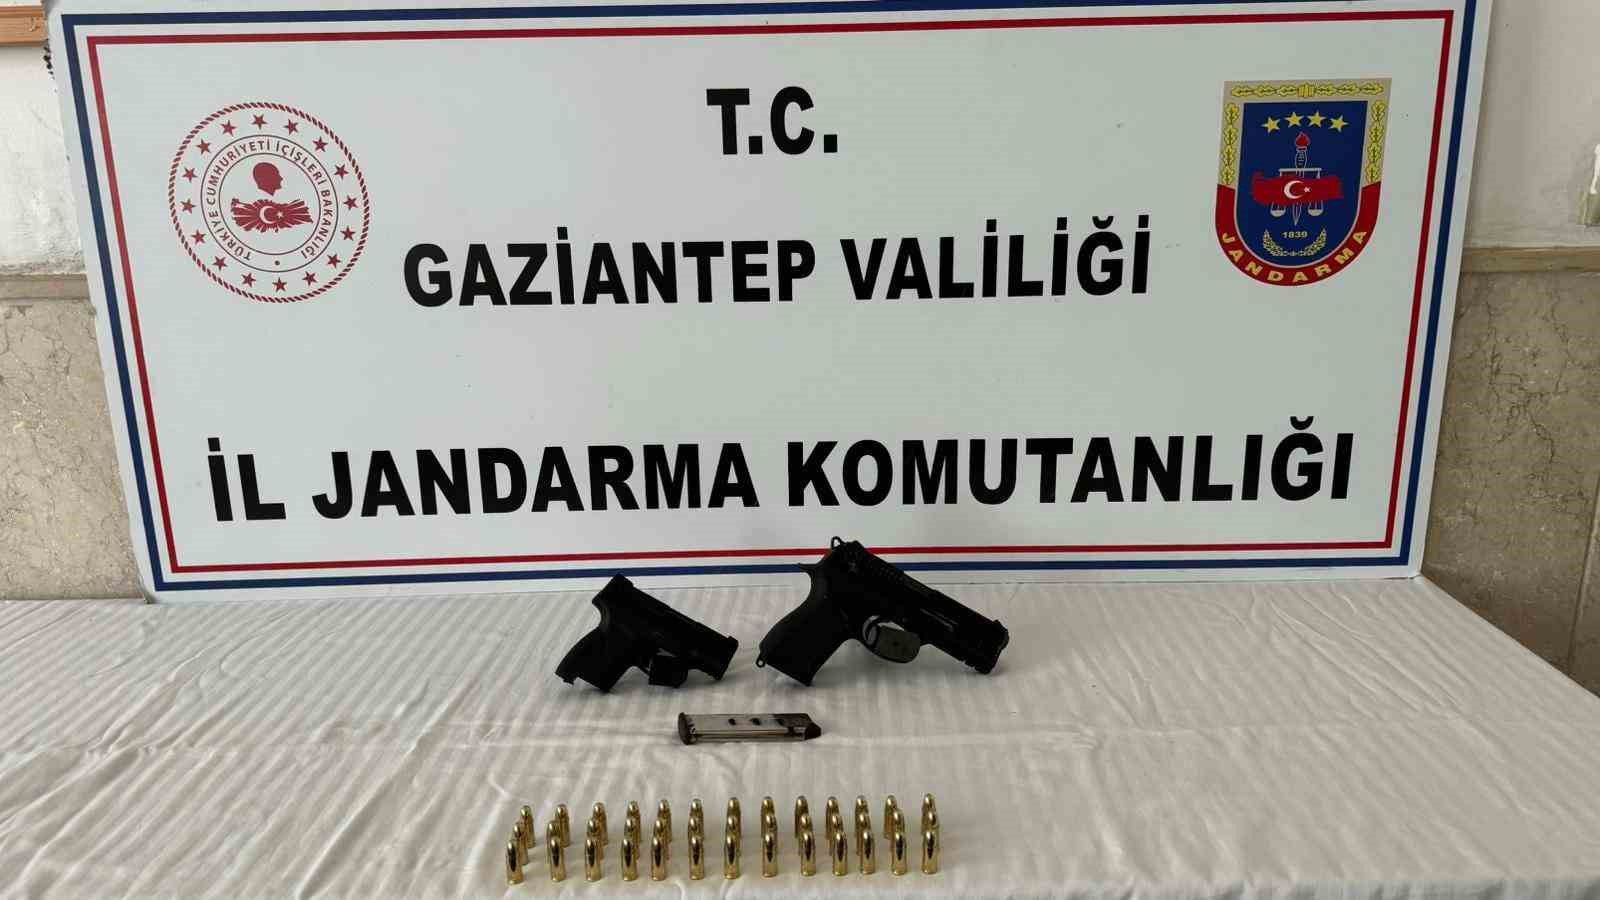 Gaziantep’te kaçak 5 tabanca ile 3 av tüfeği ele geçirildi
